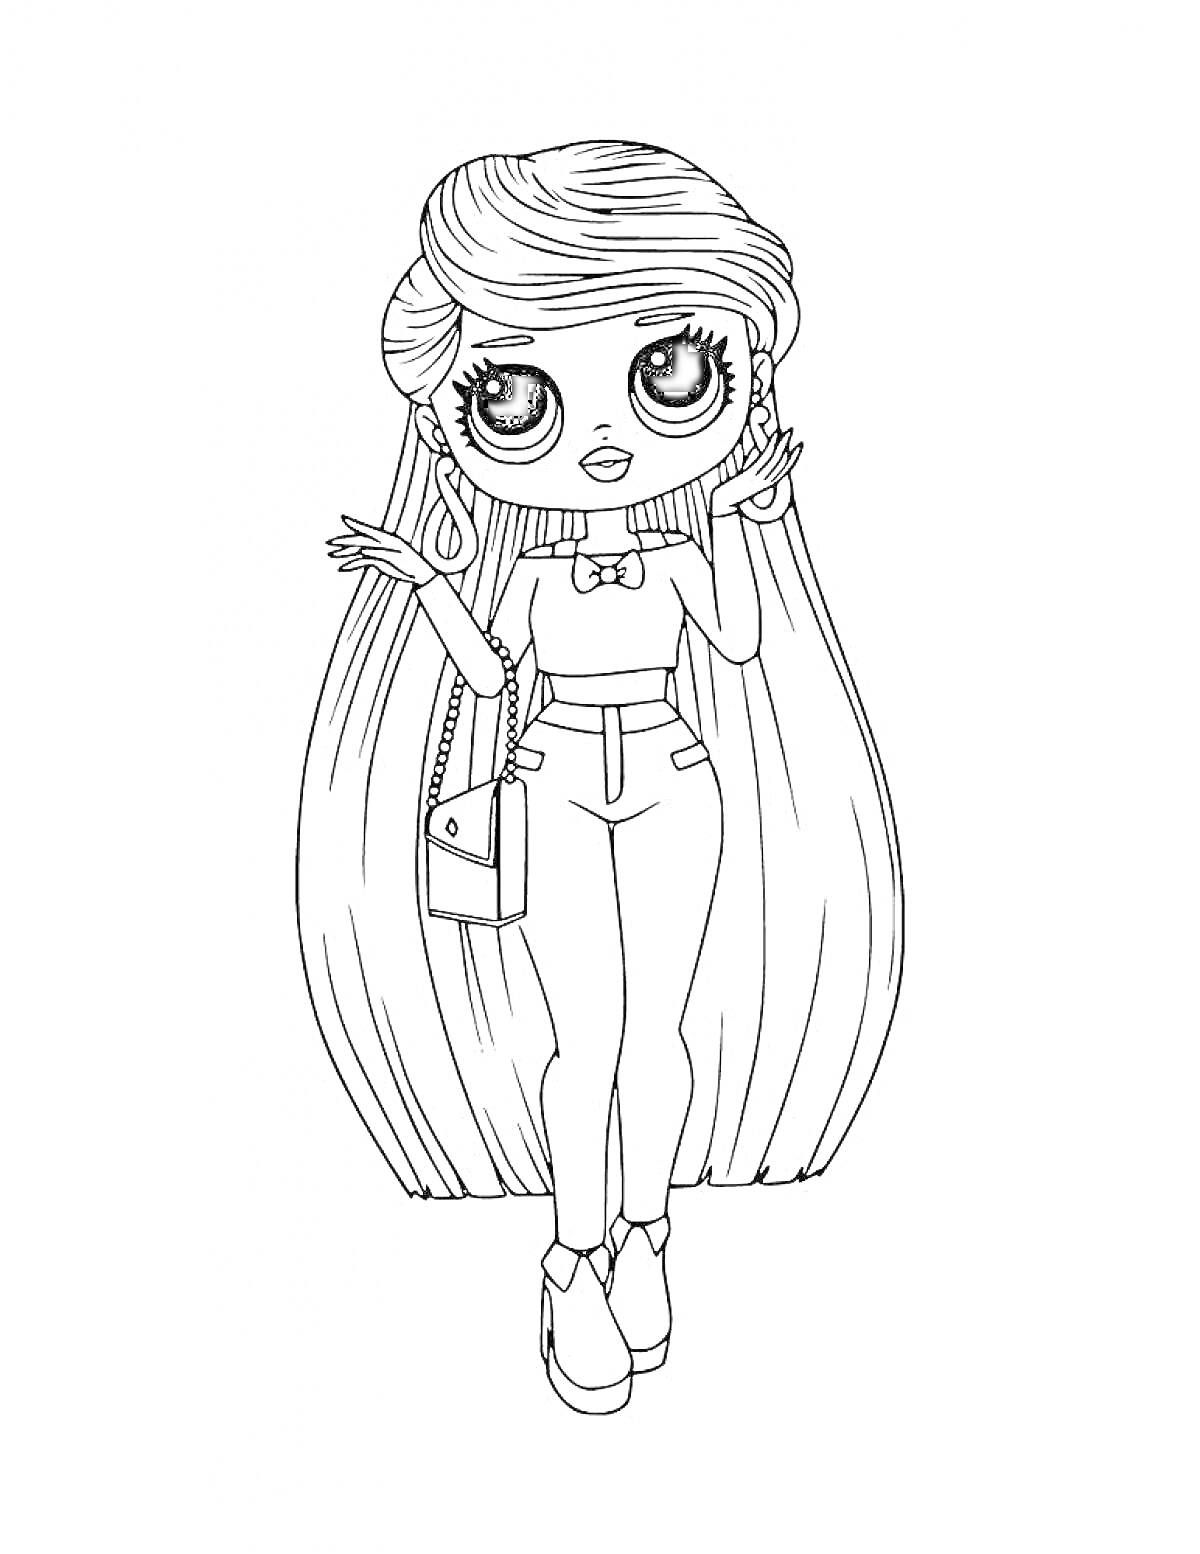 Раскраска Девочка ЛОЛ с длинными волосами, в облегающей одежде, с сумочкой через плечо и в серьгах